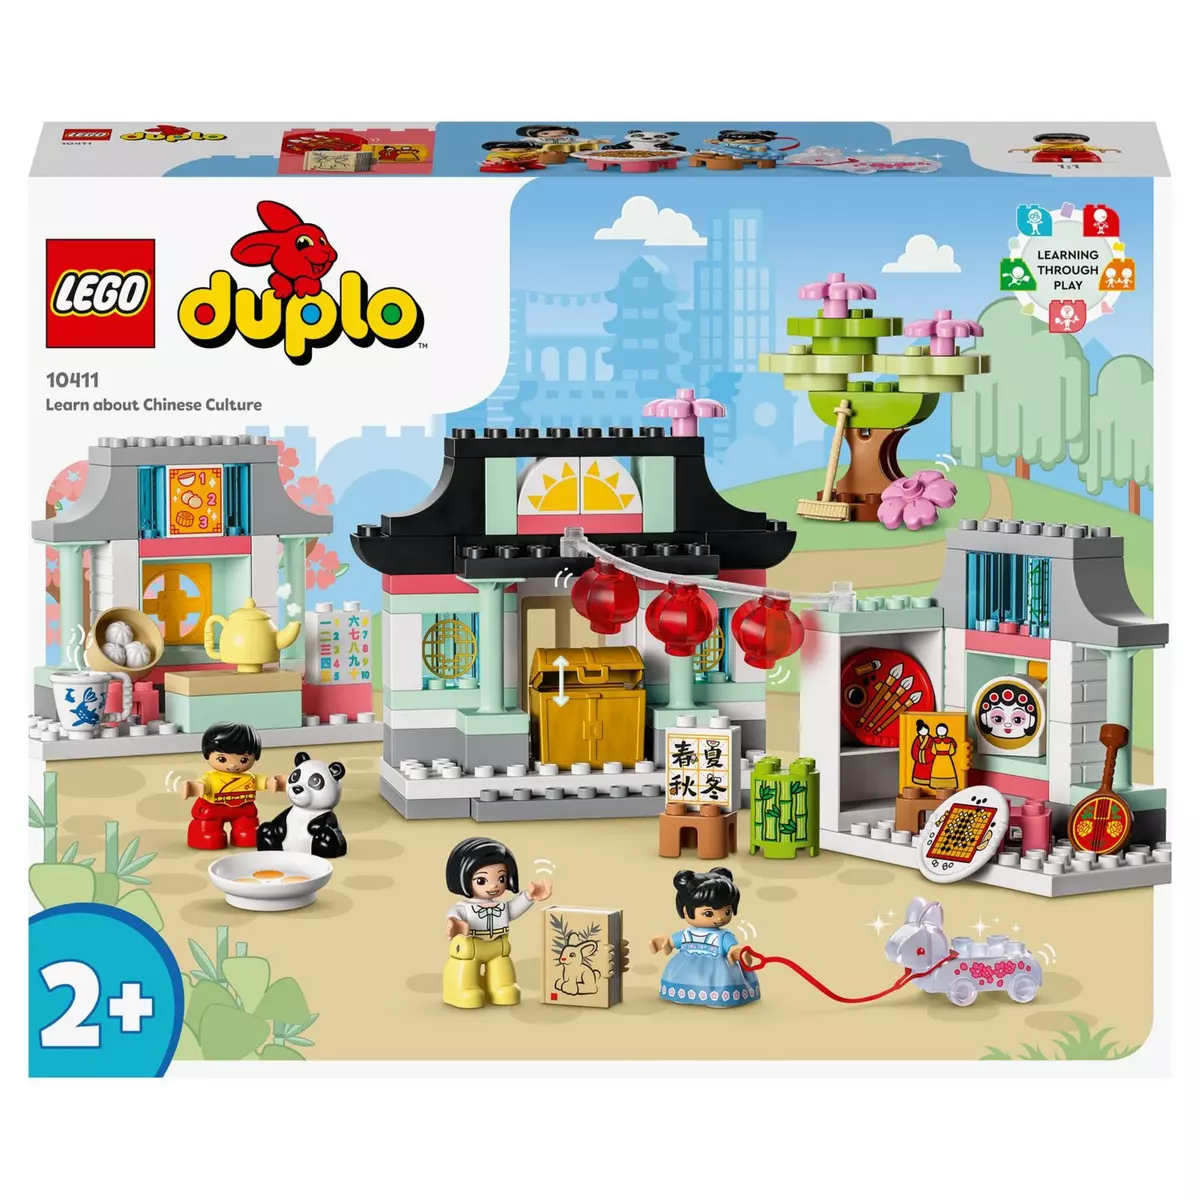 LEGO Duplo Ma ville 10411 Découvrir la culture chinoise, Jouet Éducatif, avec Figurine Panda, et Briques